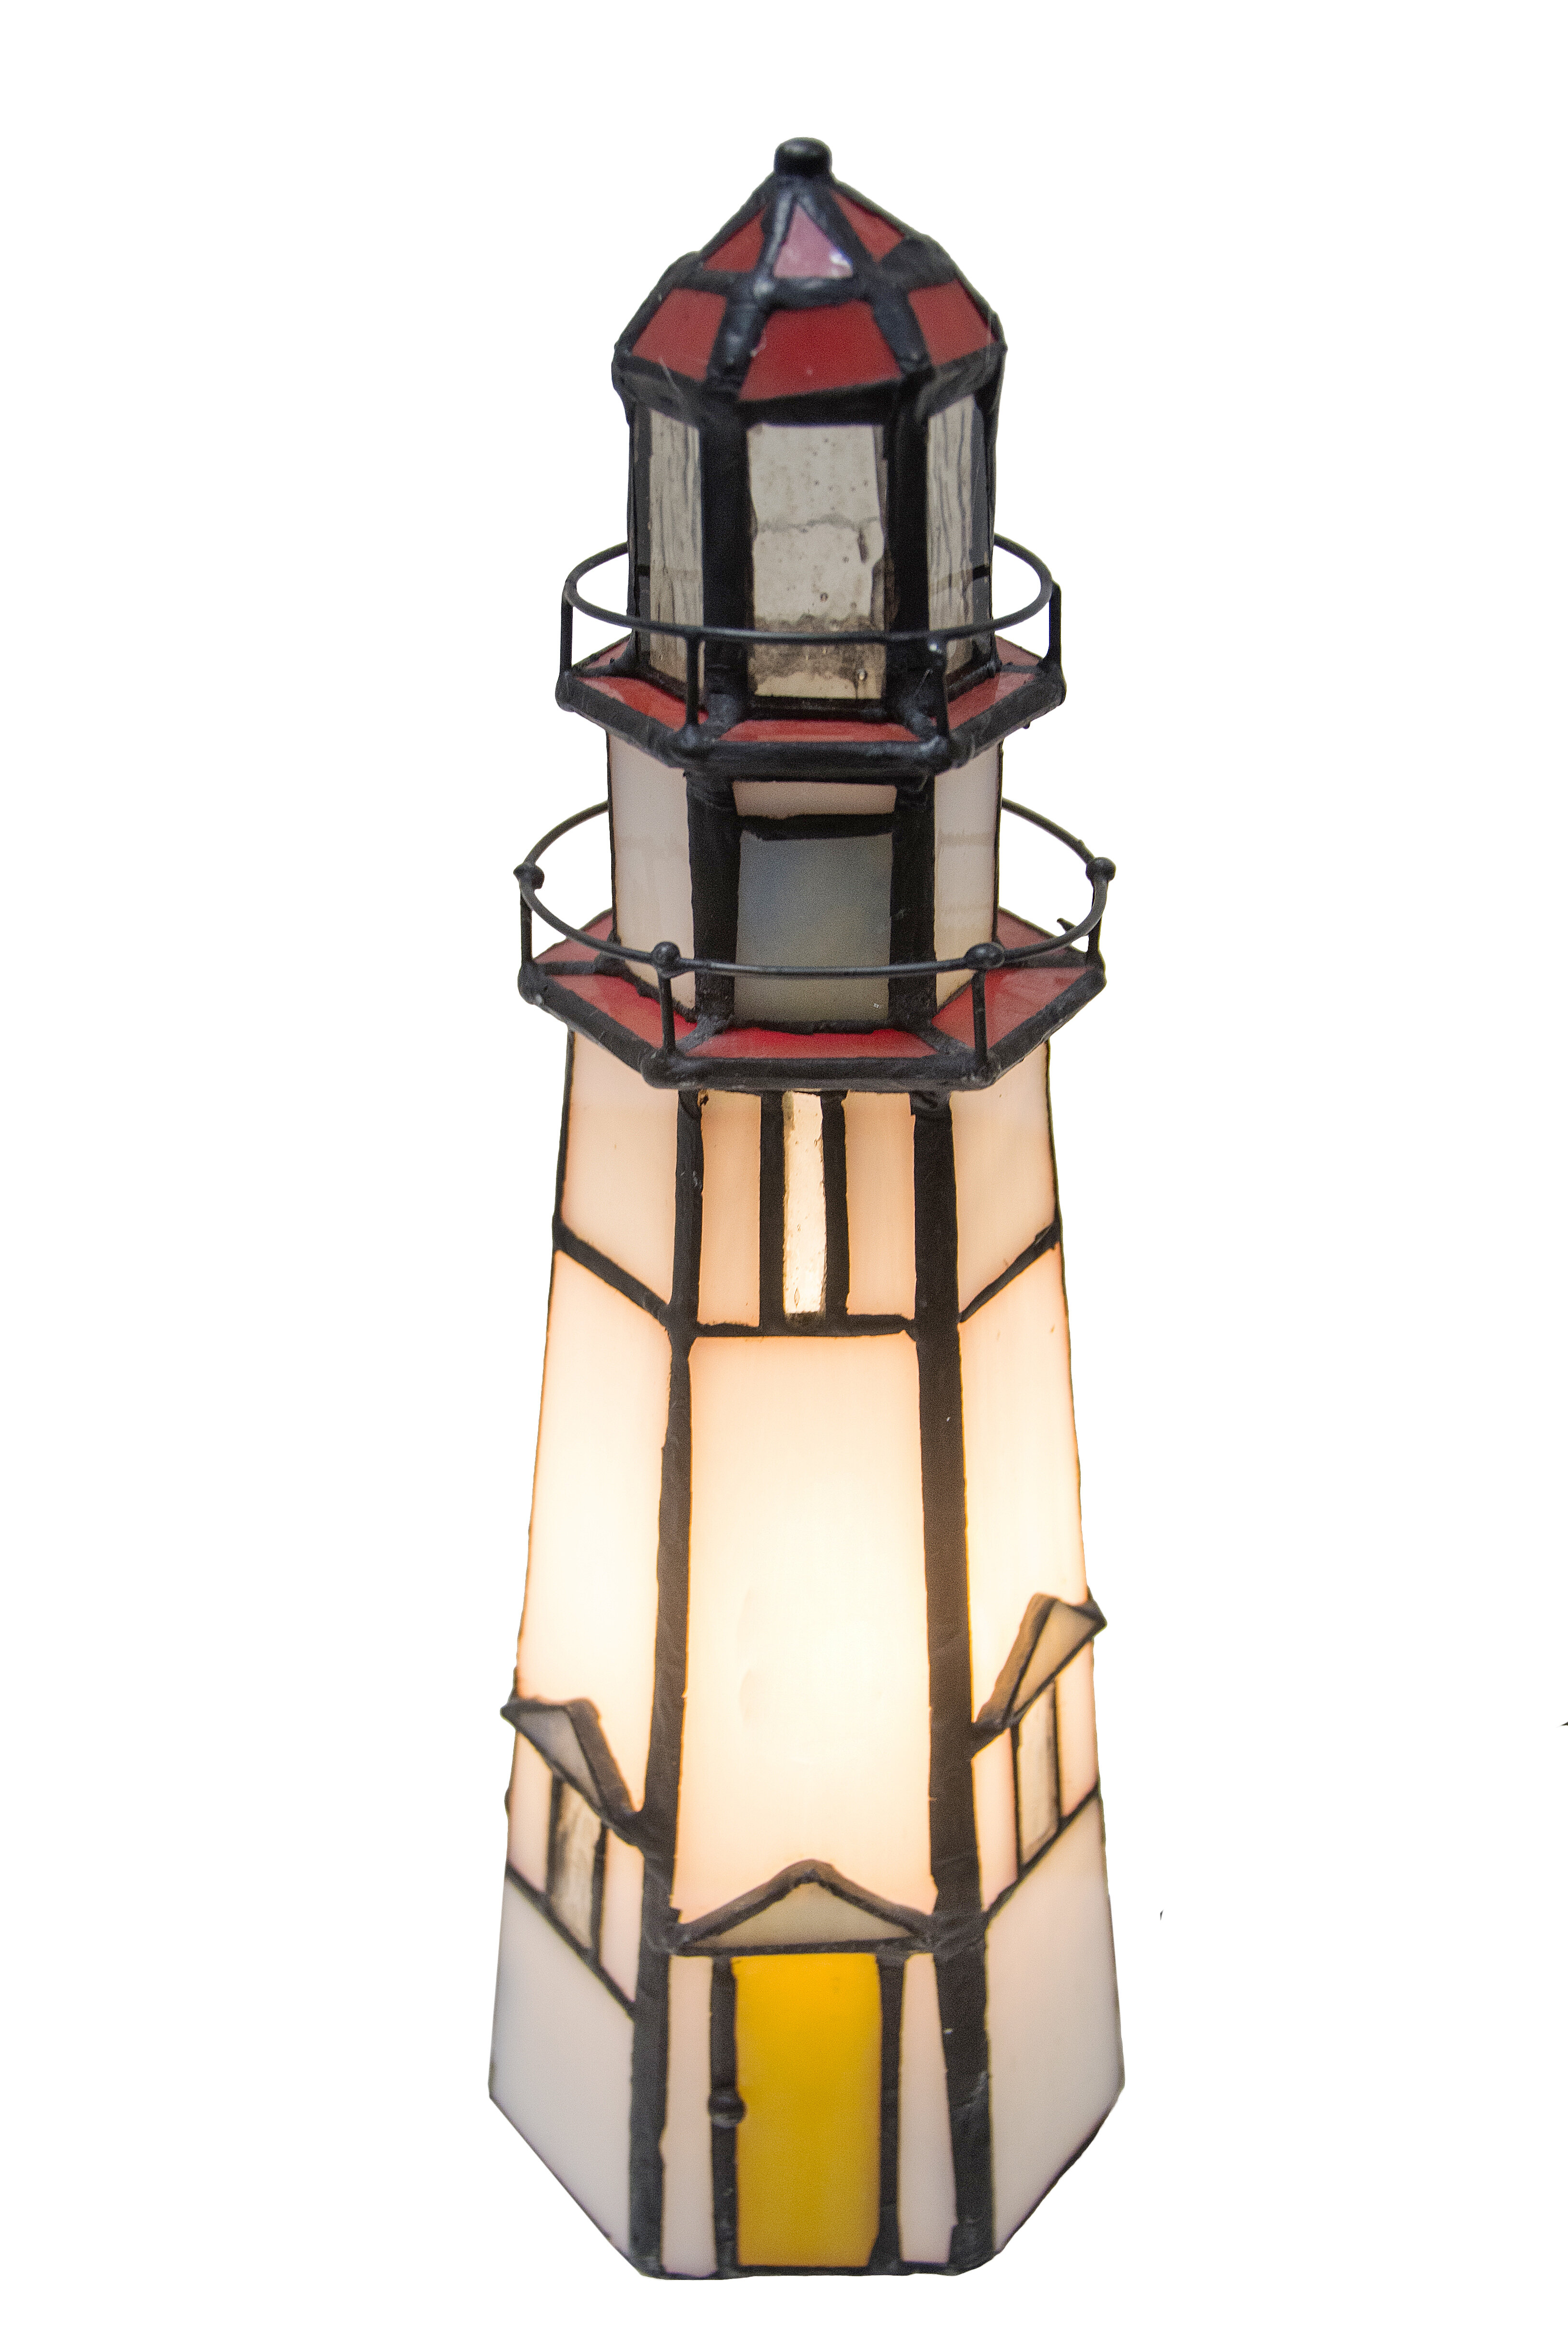 super-bright LED for Model Lighthouse Lighthouse Light 